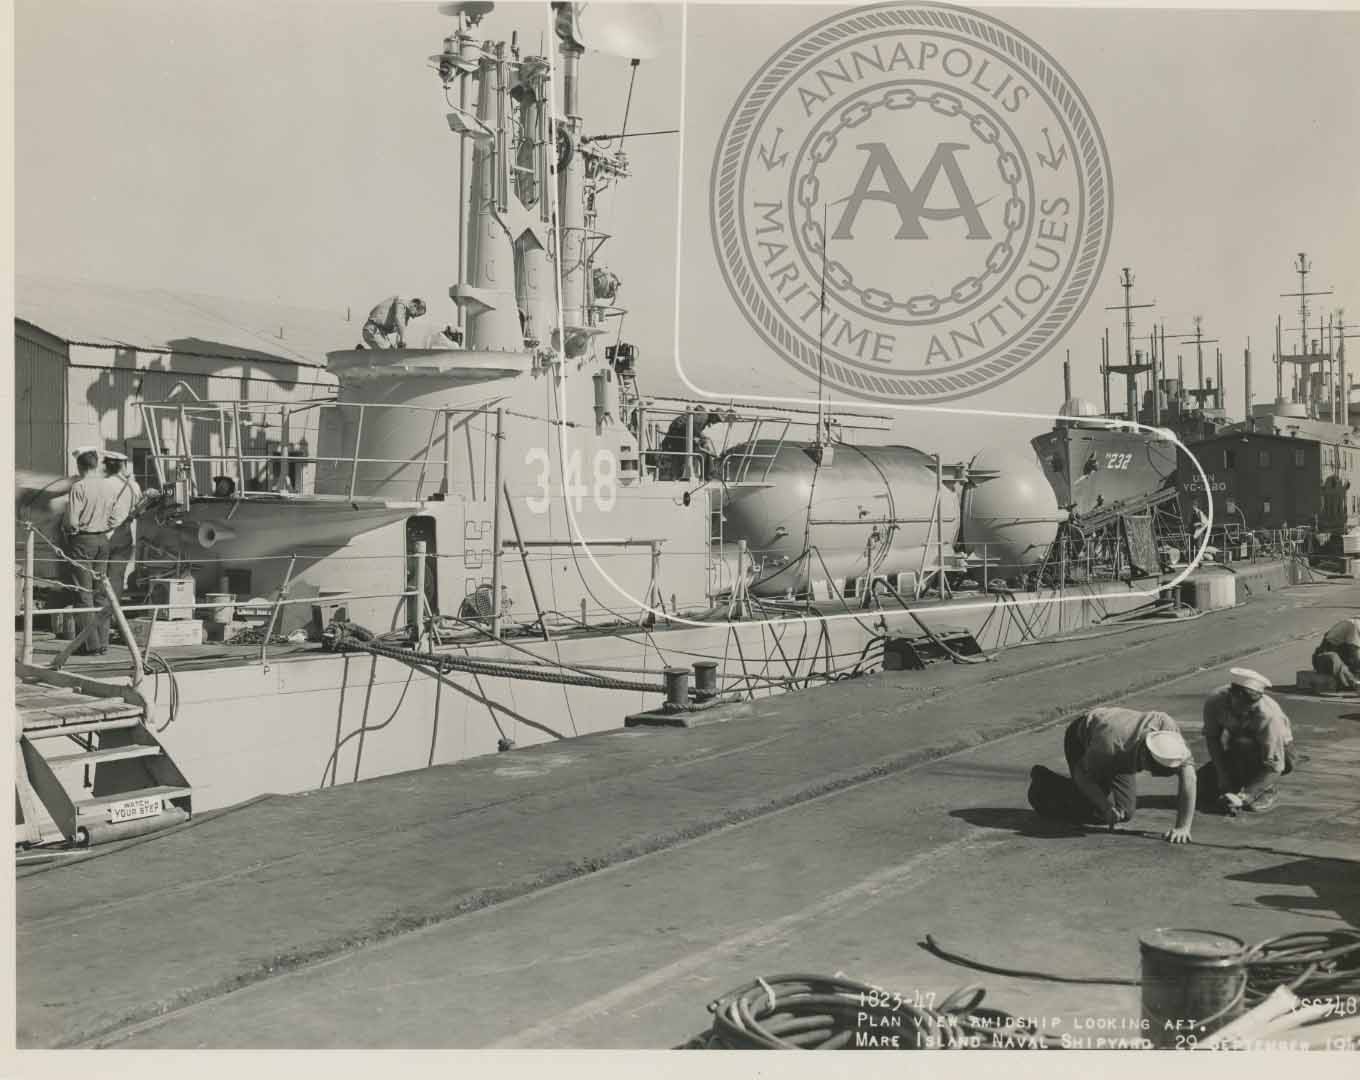 USS Cusk (SS-348) Submarine